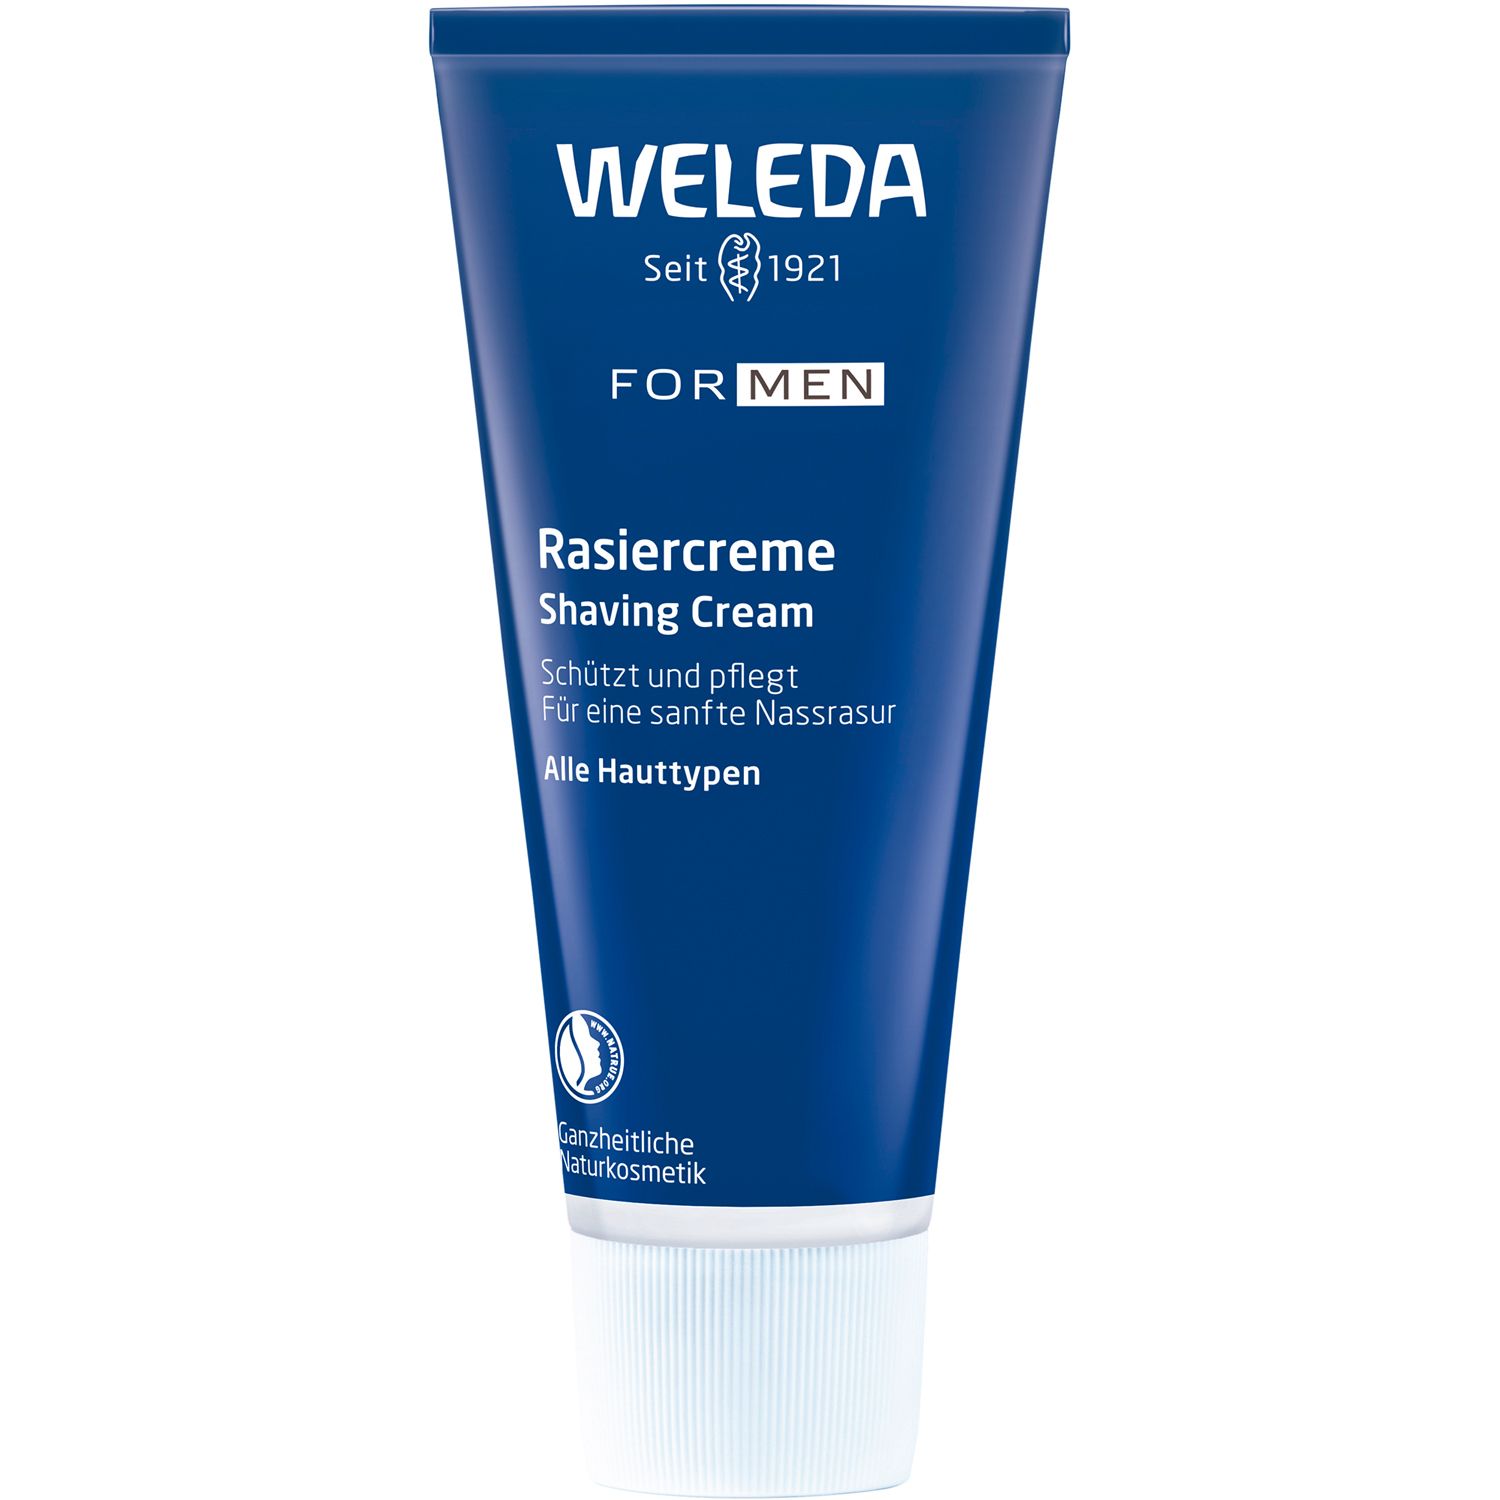 Weleda Rasiercreme  - Sanfter Schaum für eine schonende Nassrasur. Schützt und pflegt die Haut